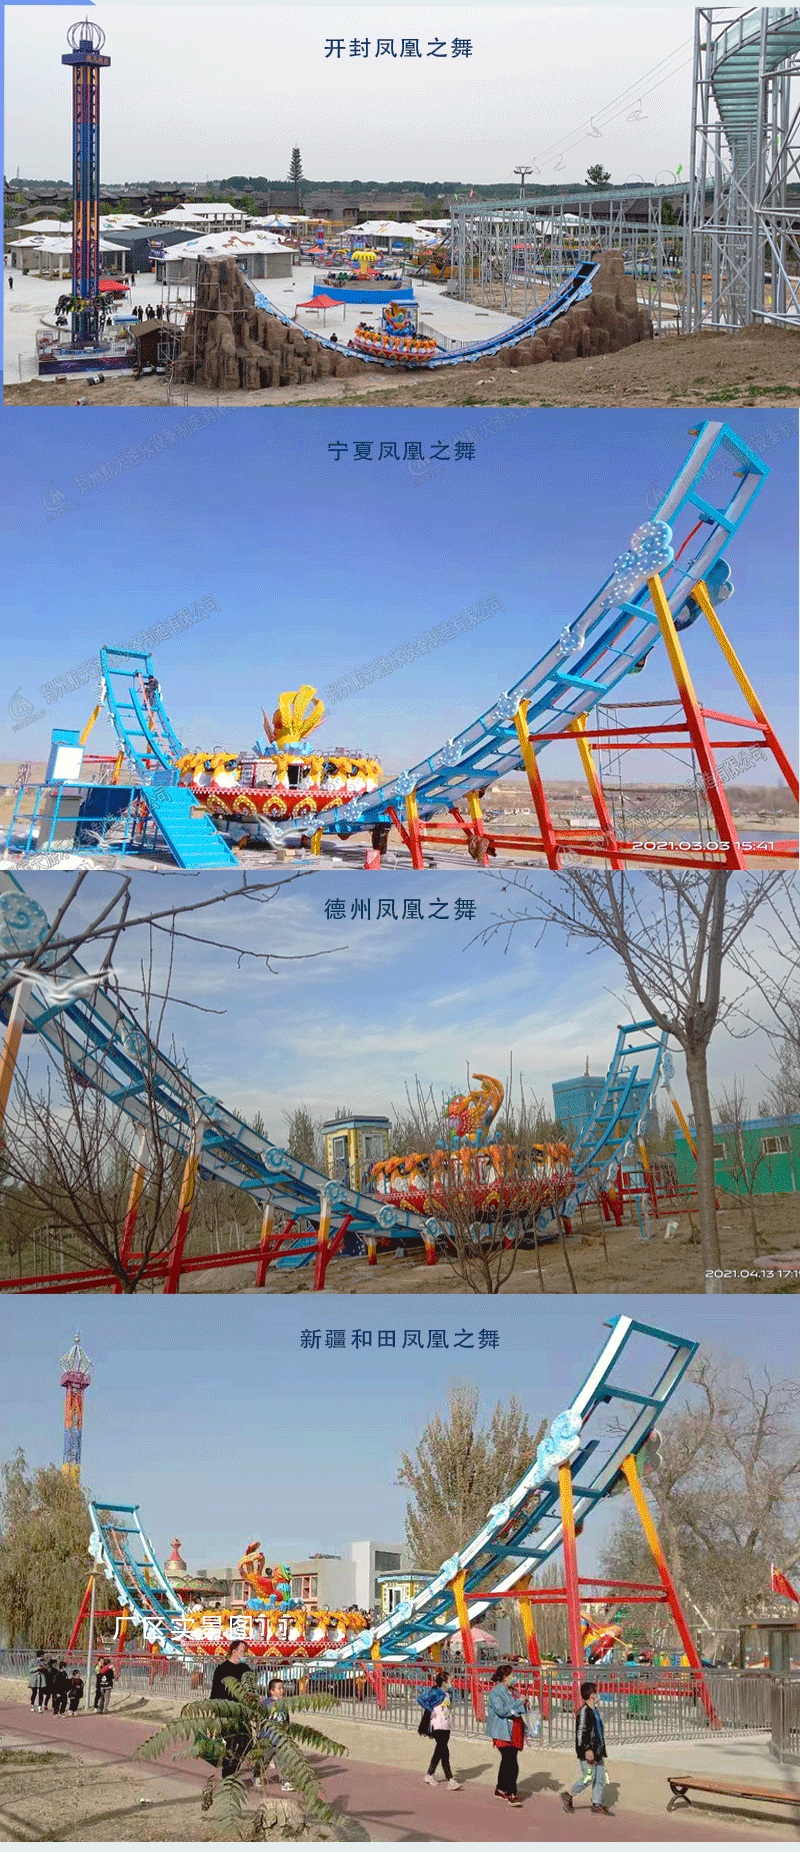 郑州新型急速魔碟游乐场设备航天游乐电话 4